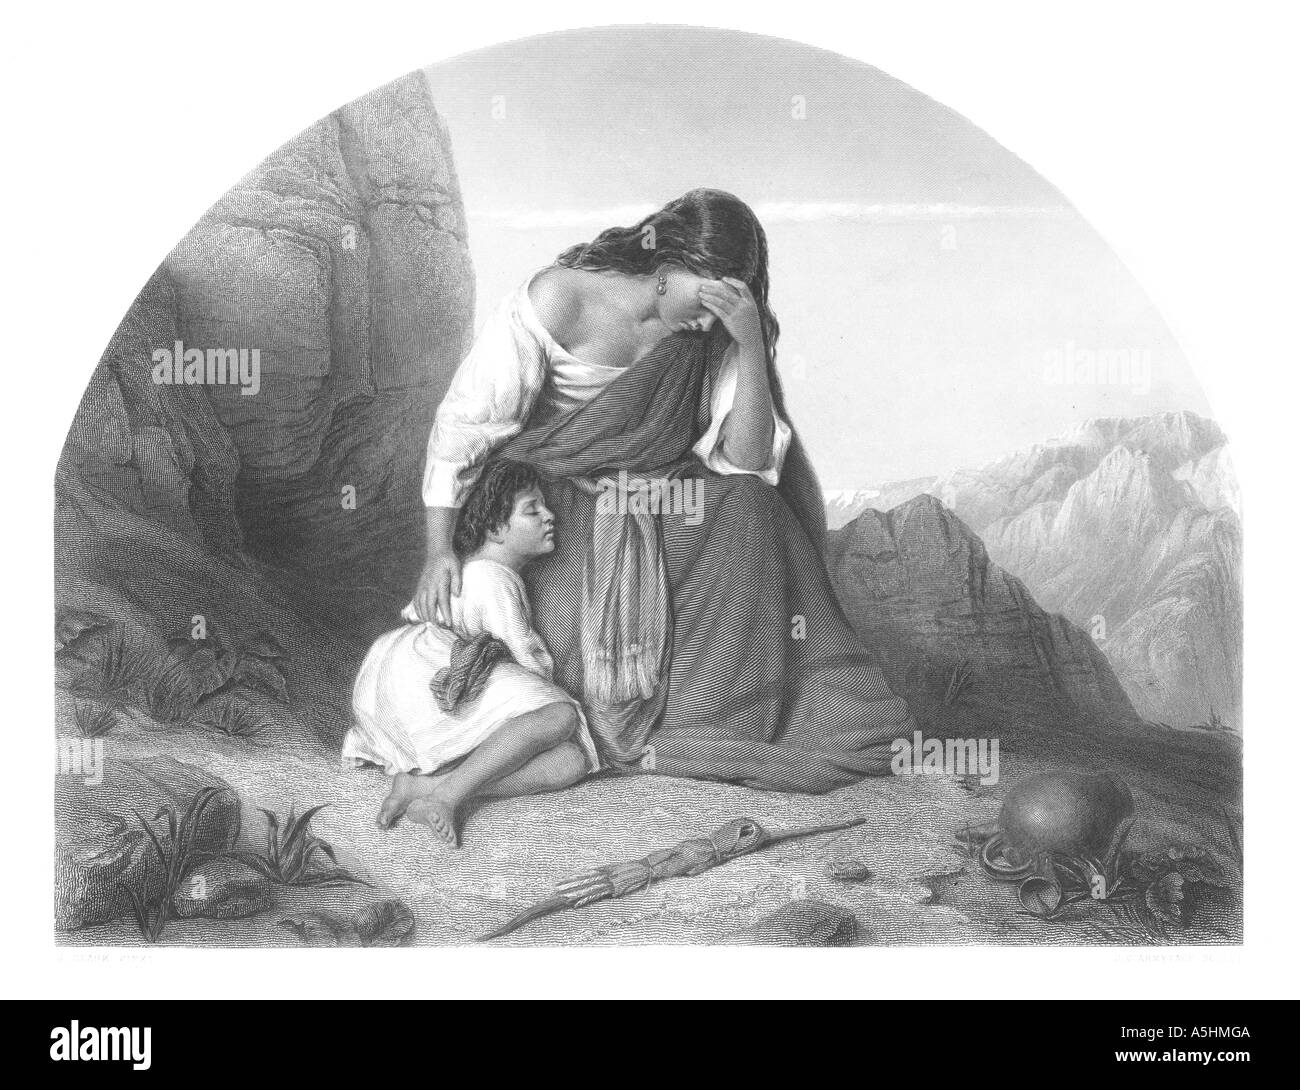 Hagar und Ismael in die Wüste hinausgeworfen von Abraham: 1. Mose Kapitel 21 Vers 16 Gravur Stockfoto